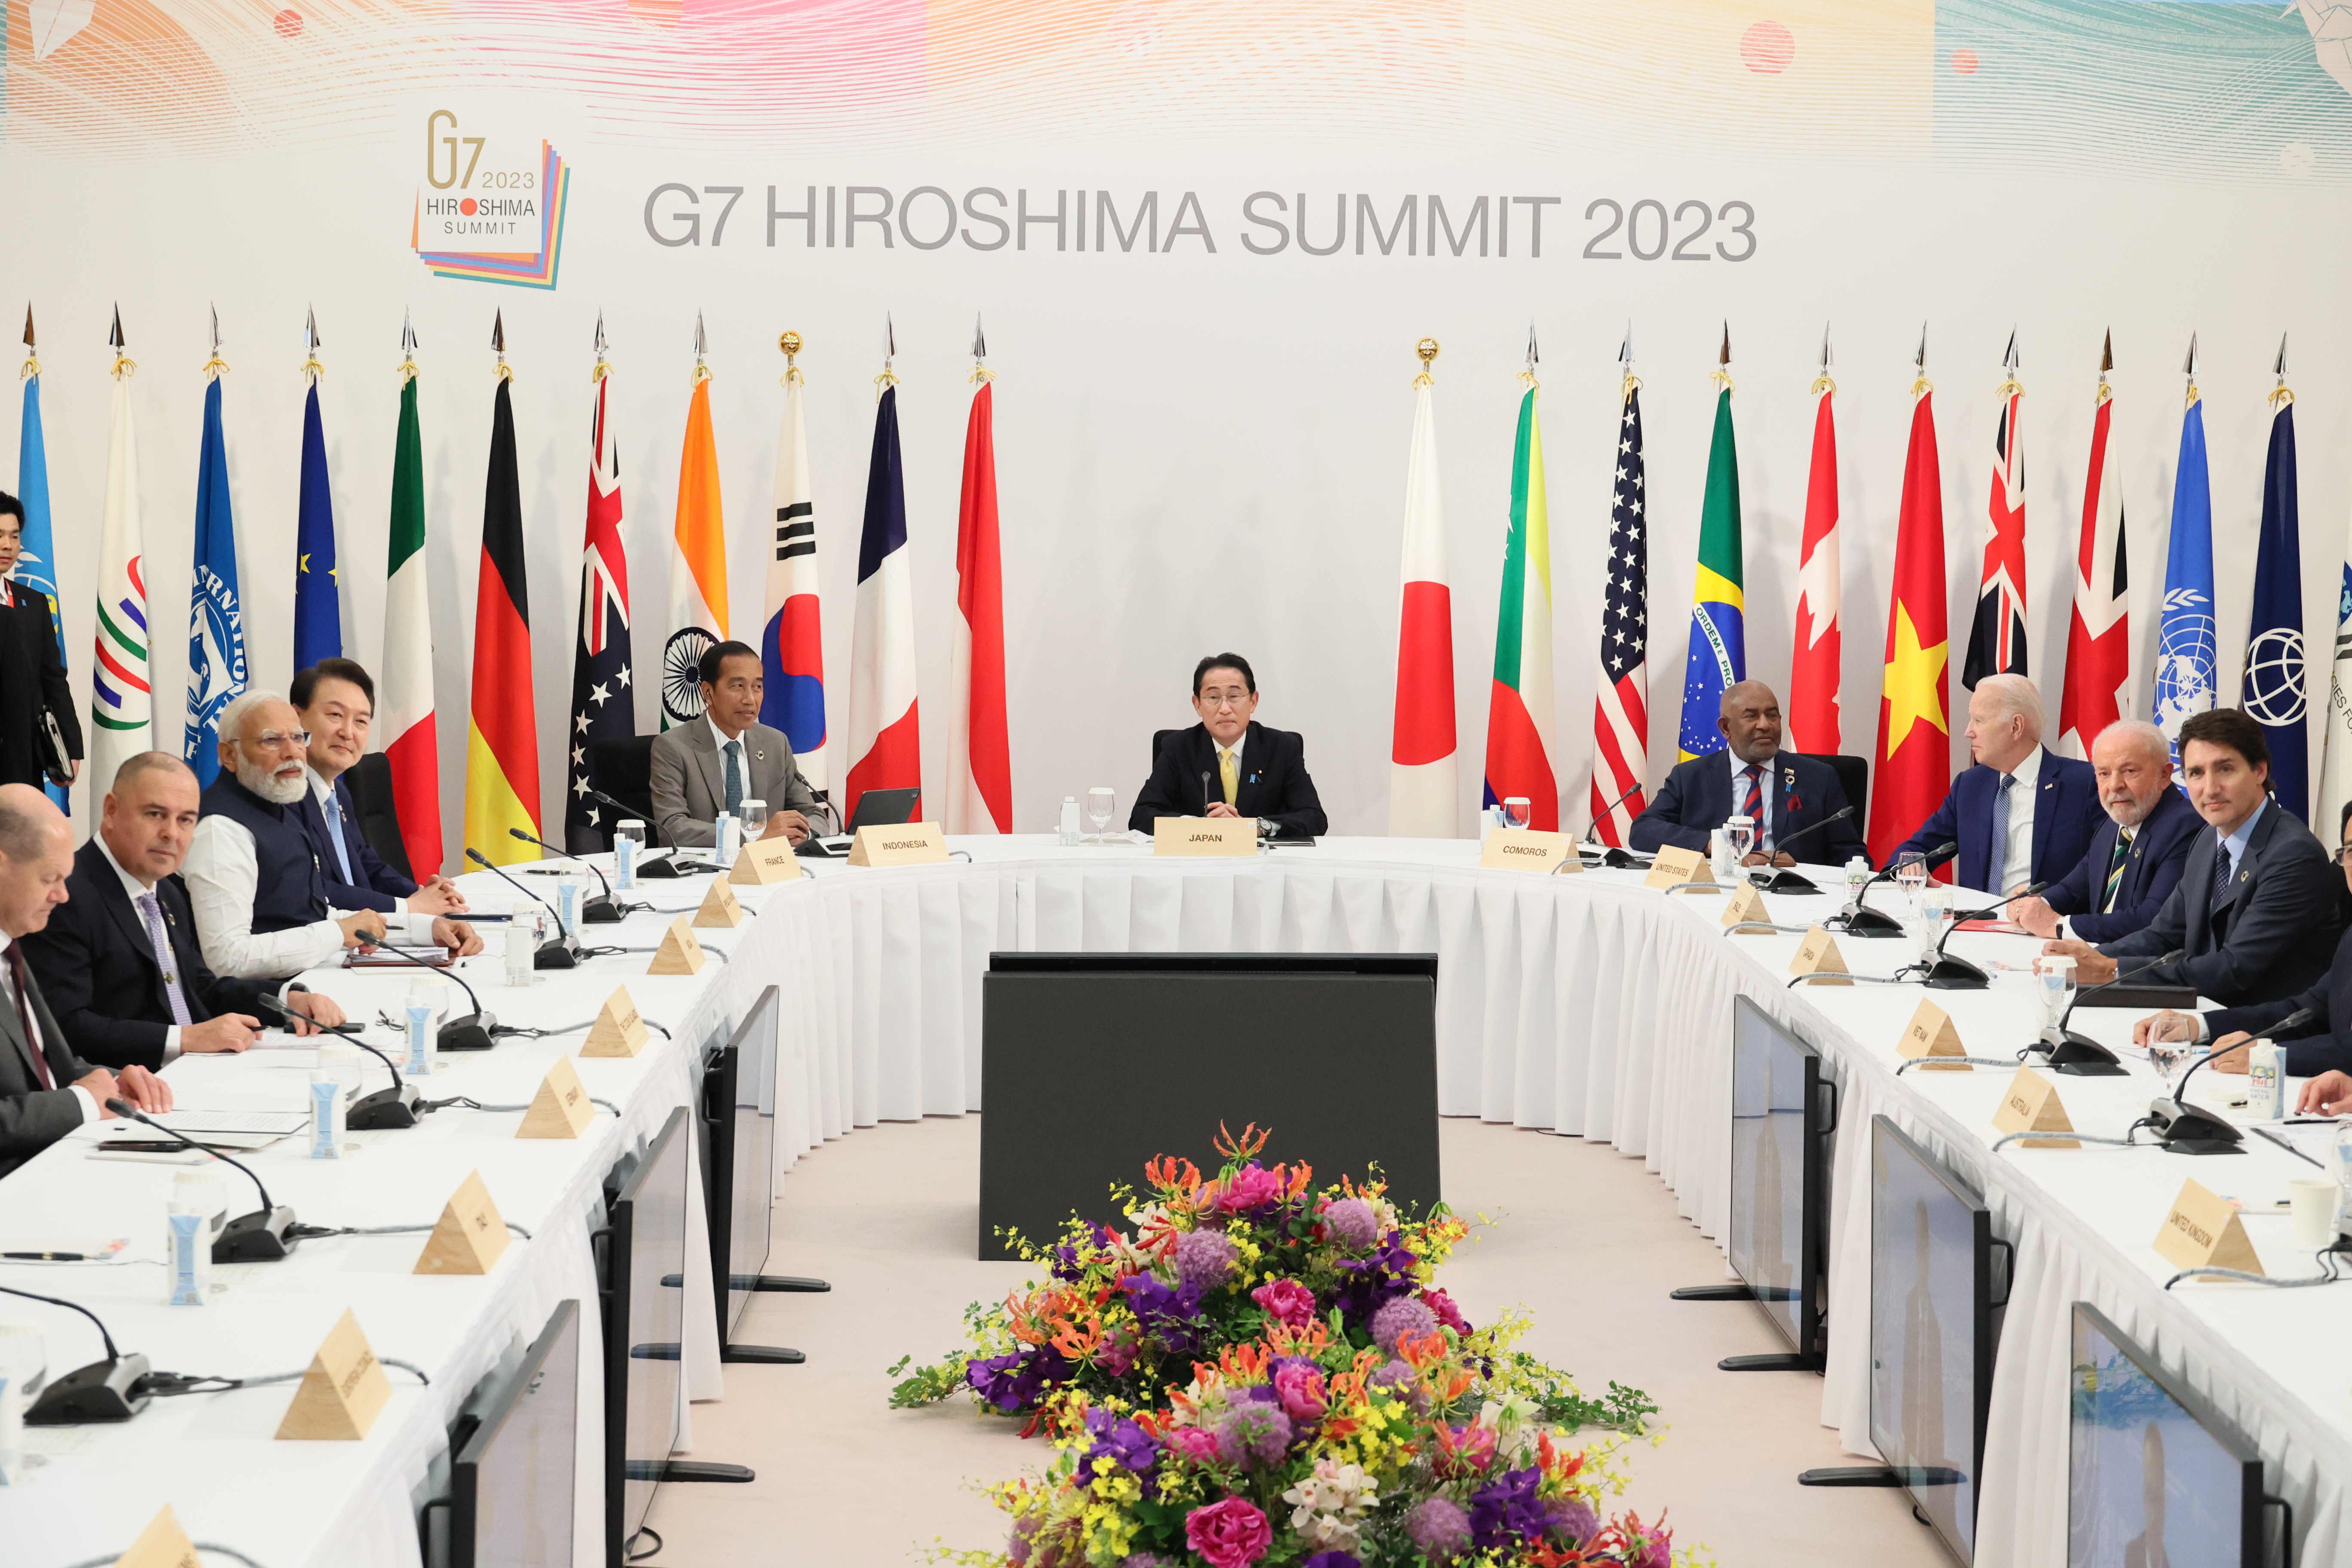 El G7 prendrà mesures per reduir la dependència comercial de la Xina